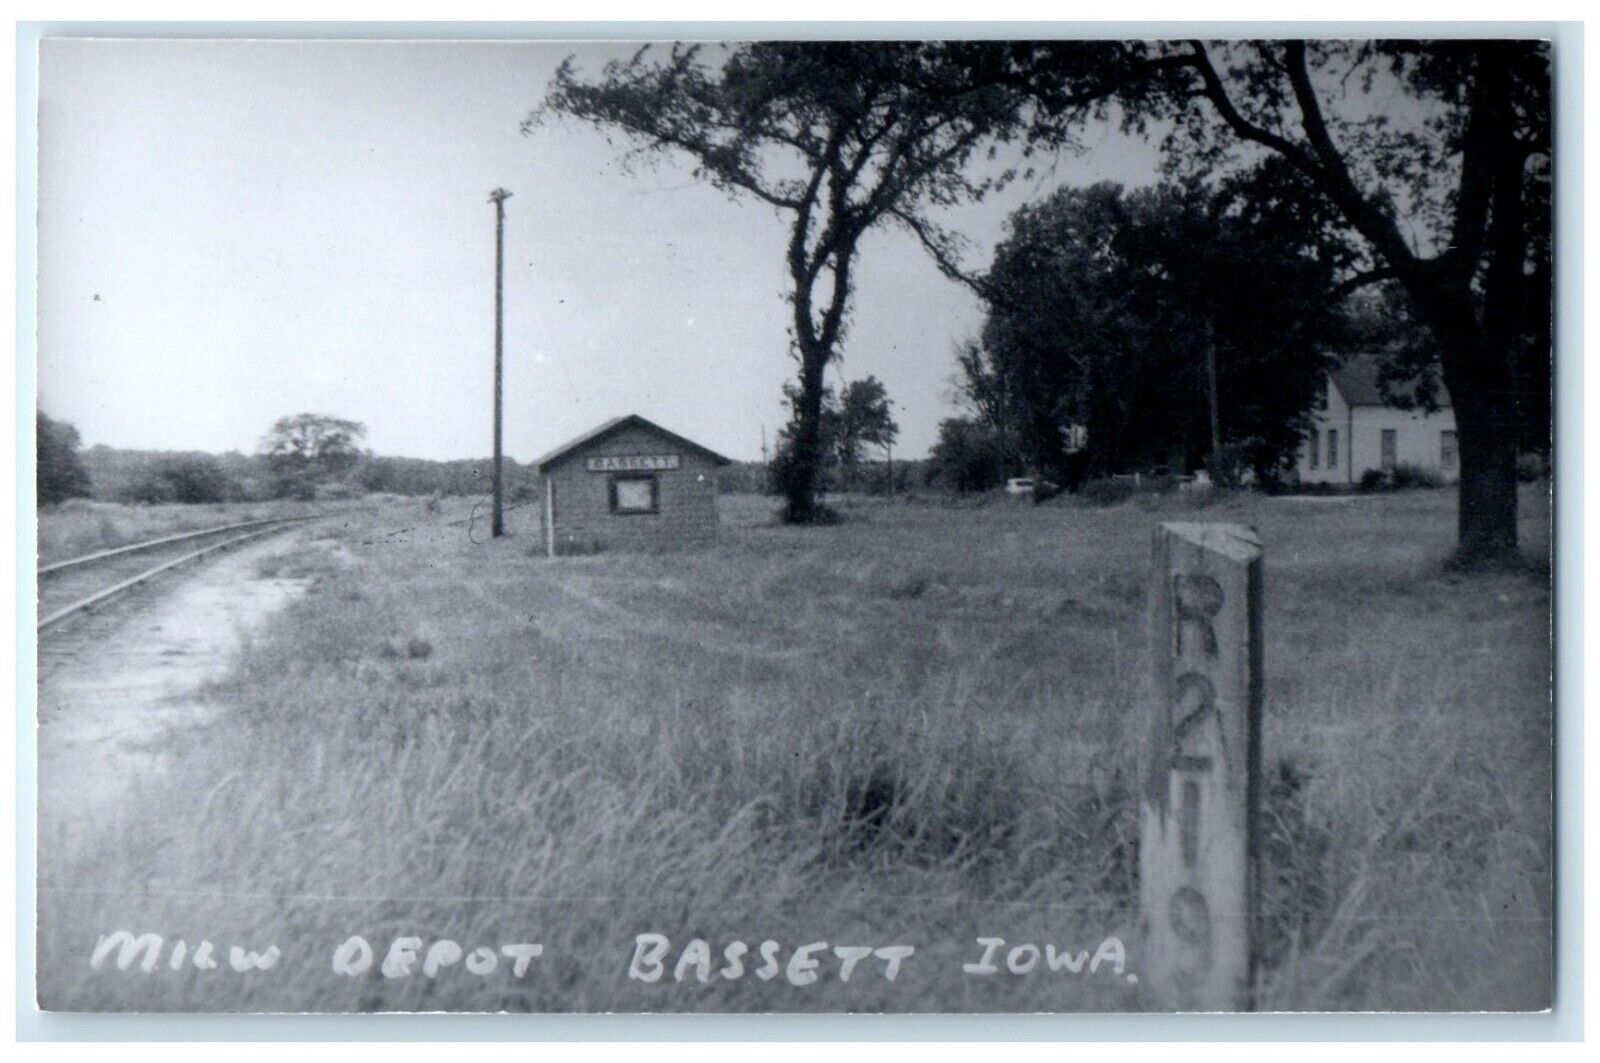 c1960's MILW Depot Bassett Iowa Railroad Train Depot Station RPPC Photo Postcard